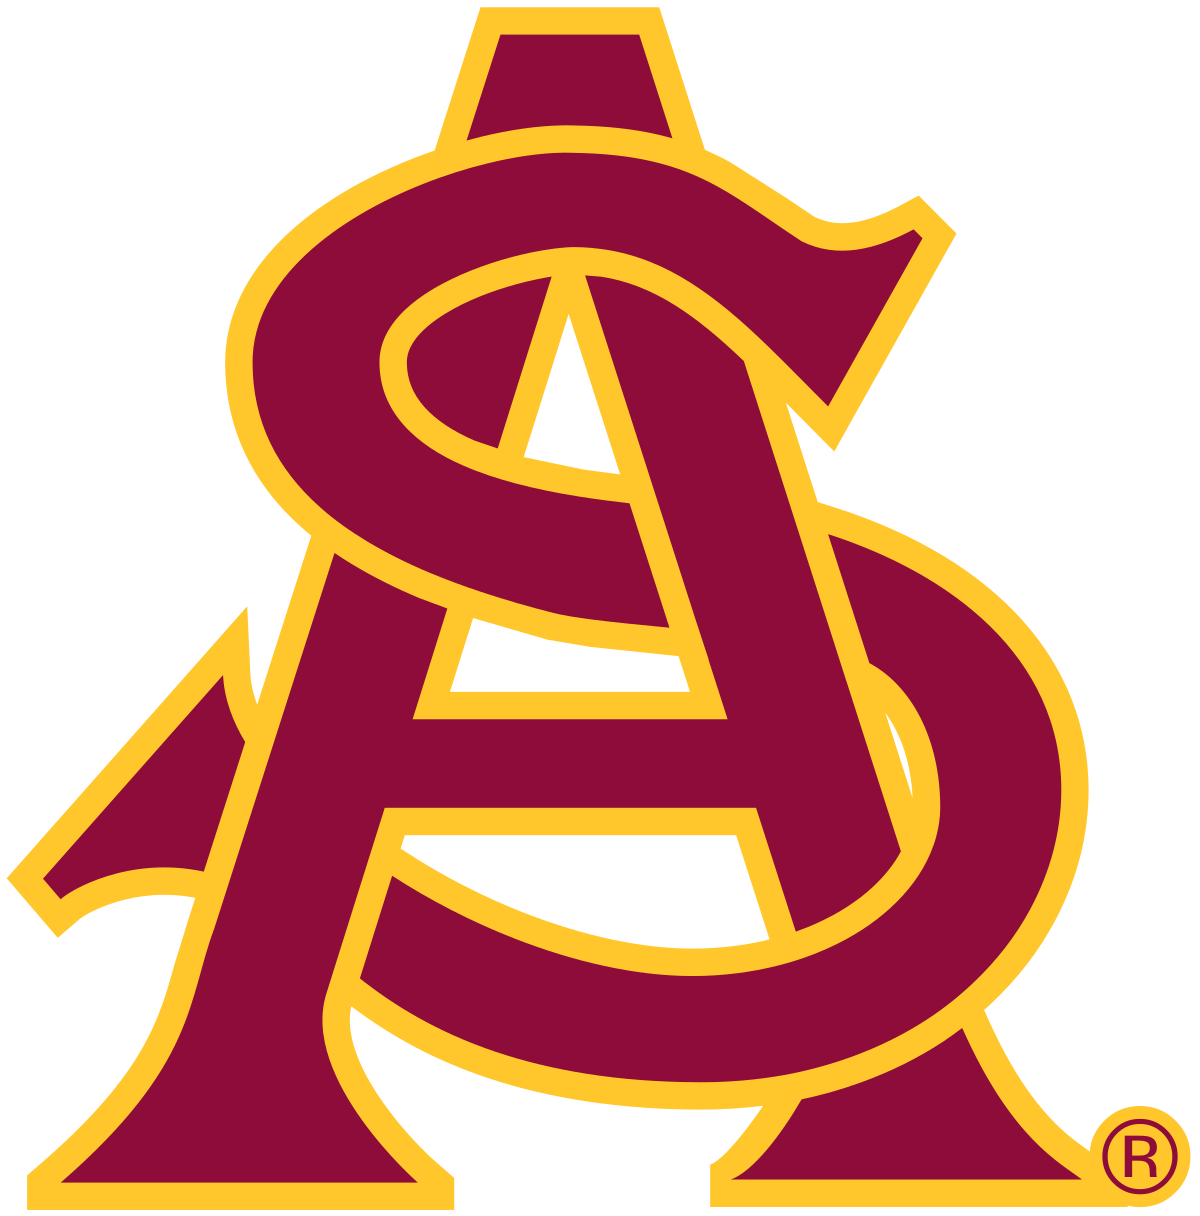 Arizona Football Team Logo - Arizona State Sun Devils football team